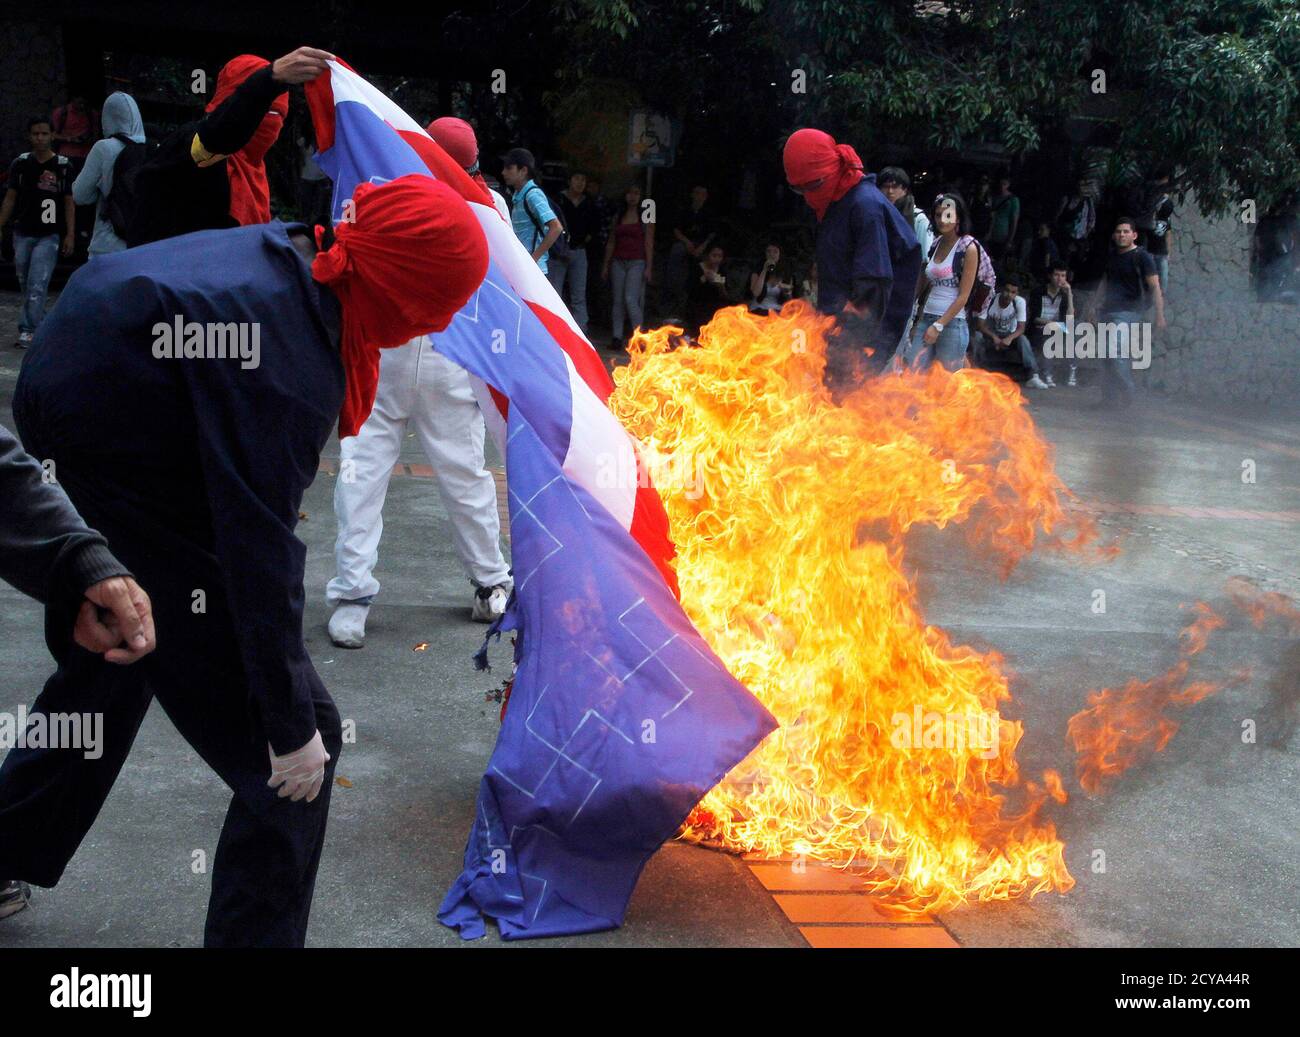 Aktivisten verbrennen die US-Flagge an der Universität von Antioquia, als sie gegen den Americas Summit protestieren, der am 13. April 2012 in Cartagena in Medellin stattfinden wird. Staatsoberhäupter treffen sich auf dem Gipfel vom 14. Bis 15. April. REUTERS/Albeiro Lopera (KOLUMBIEN - Tags: POLITISCHE UNRUHEN) Stockfoto